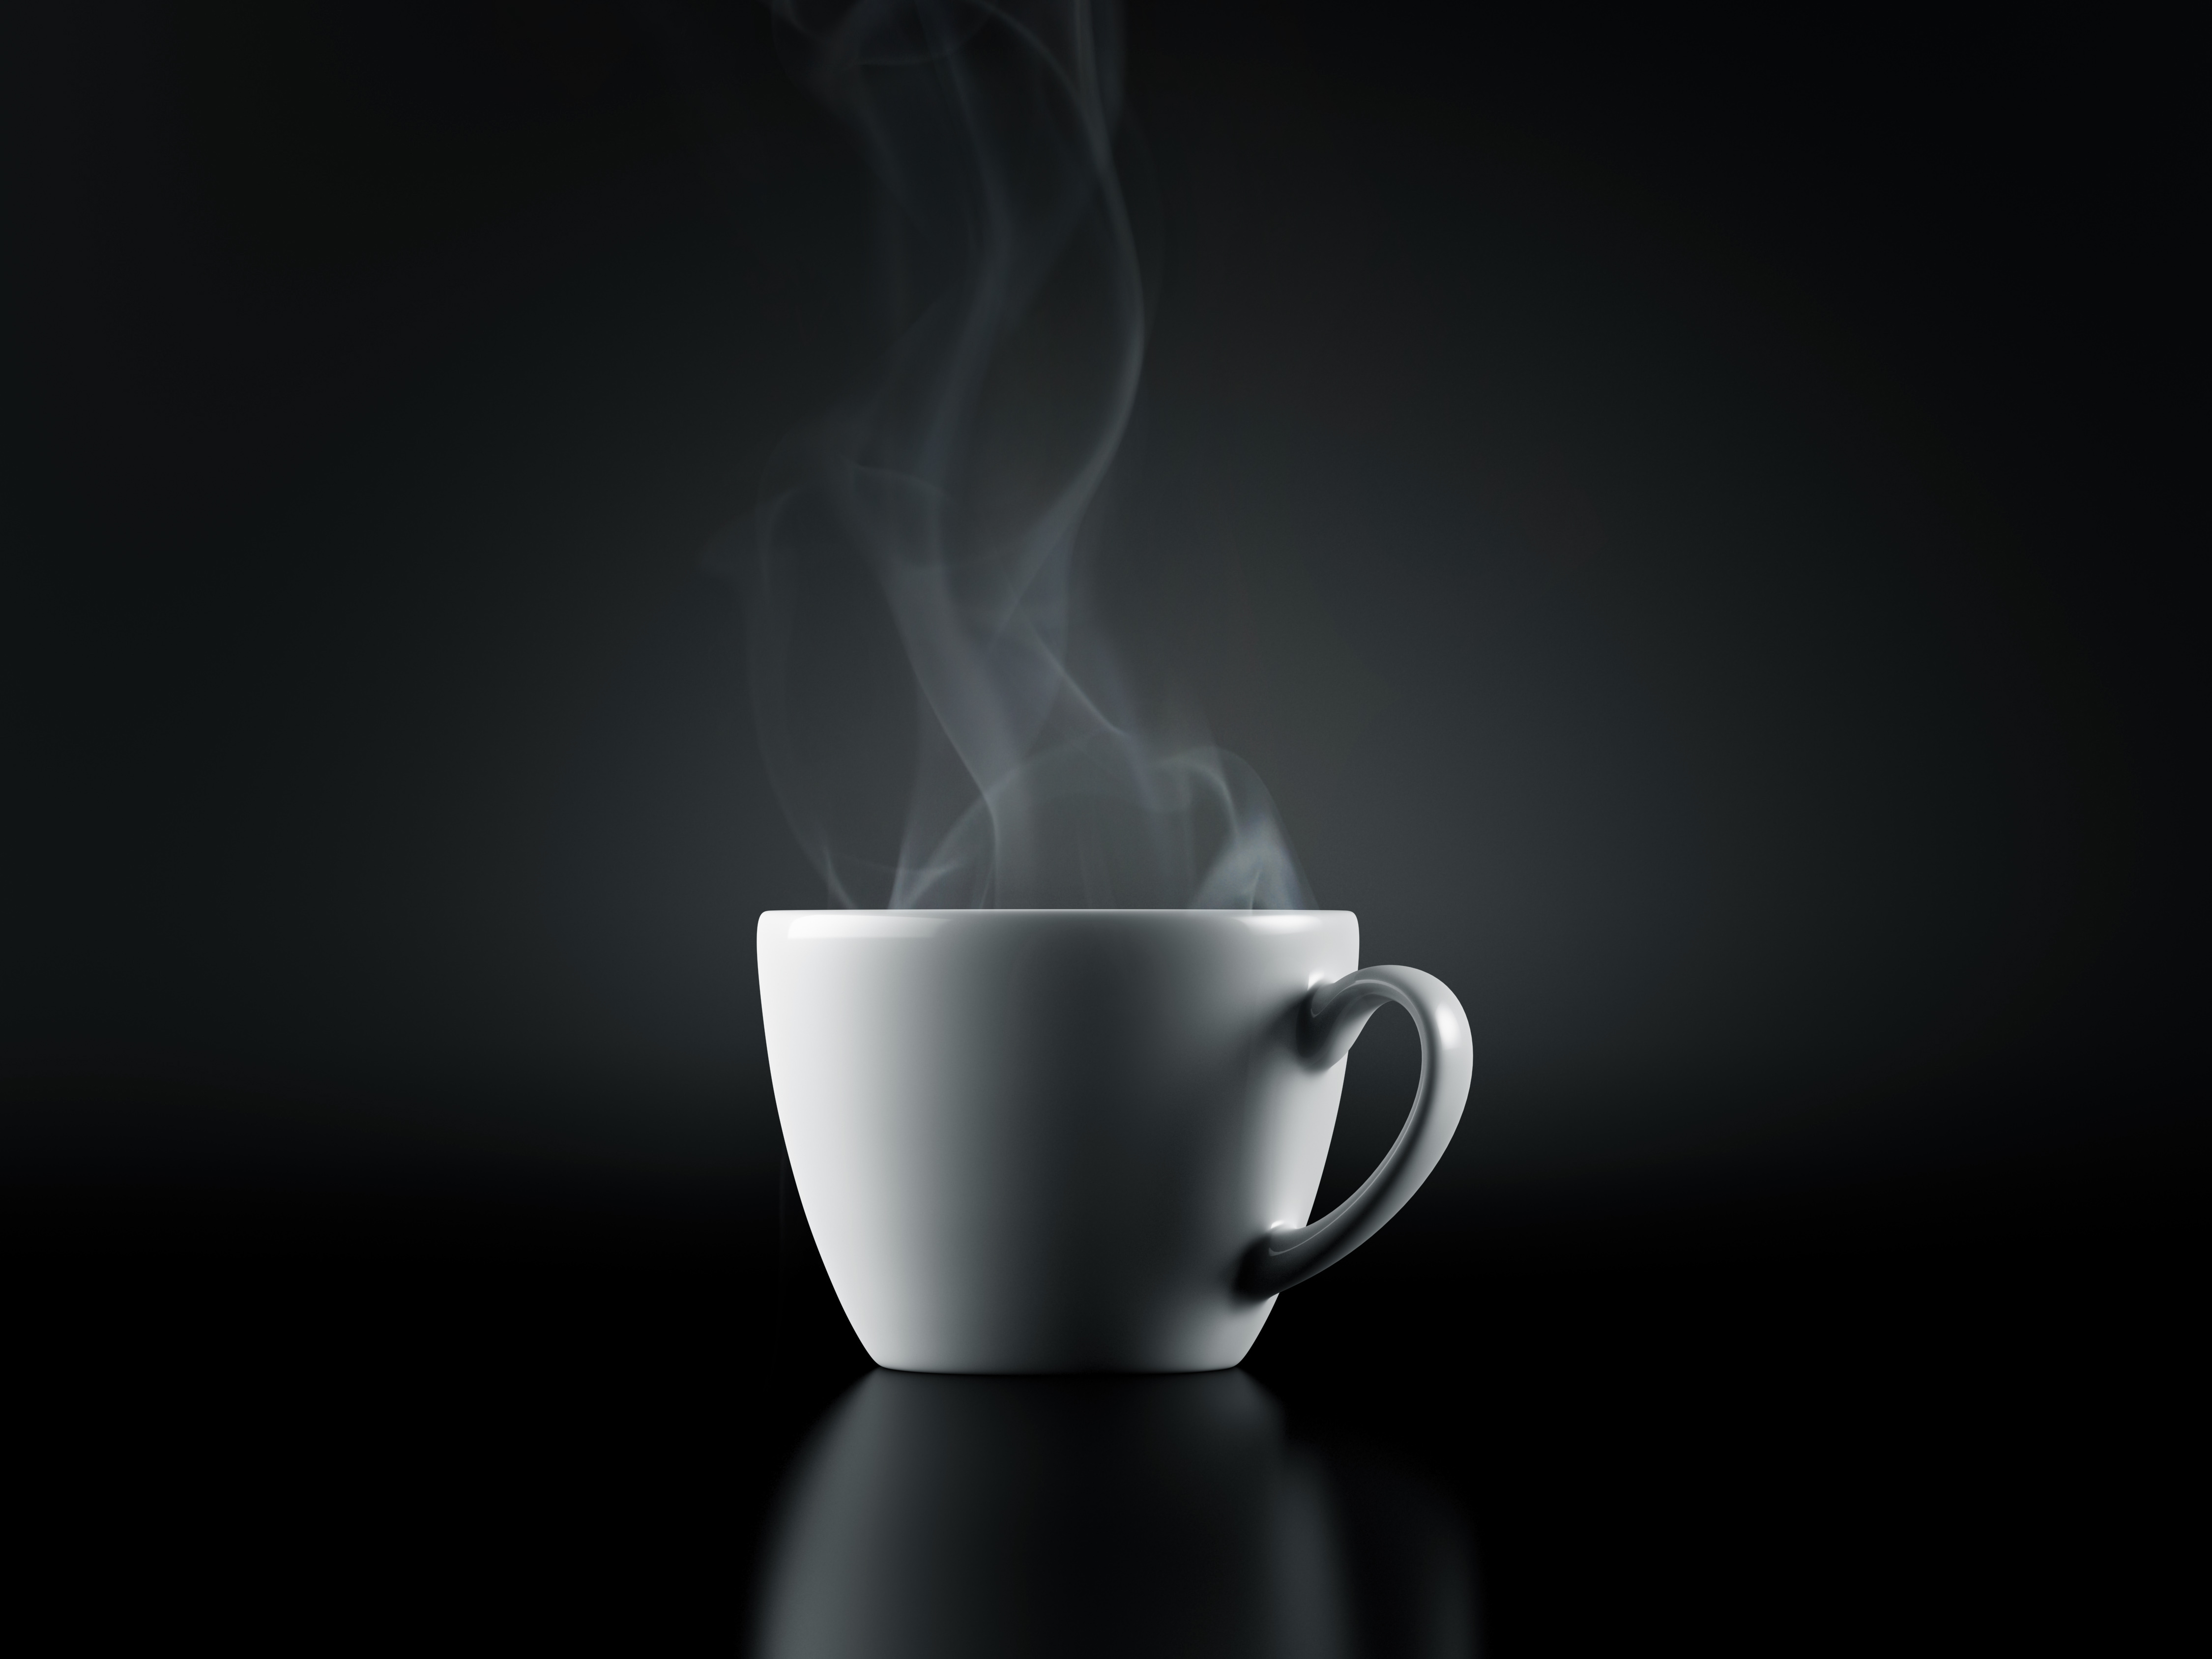 steamingcoffee.jpg